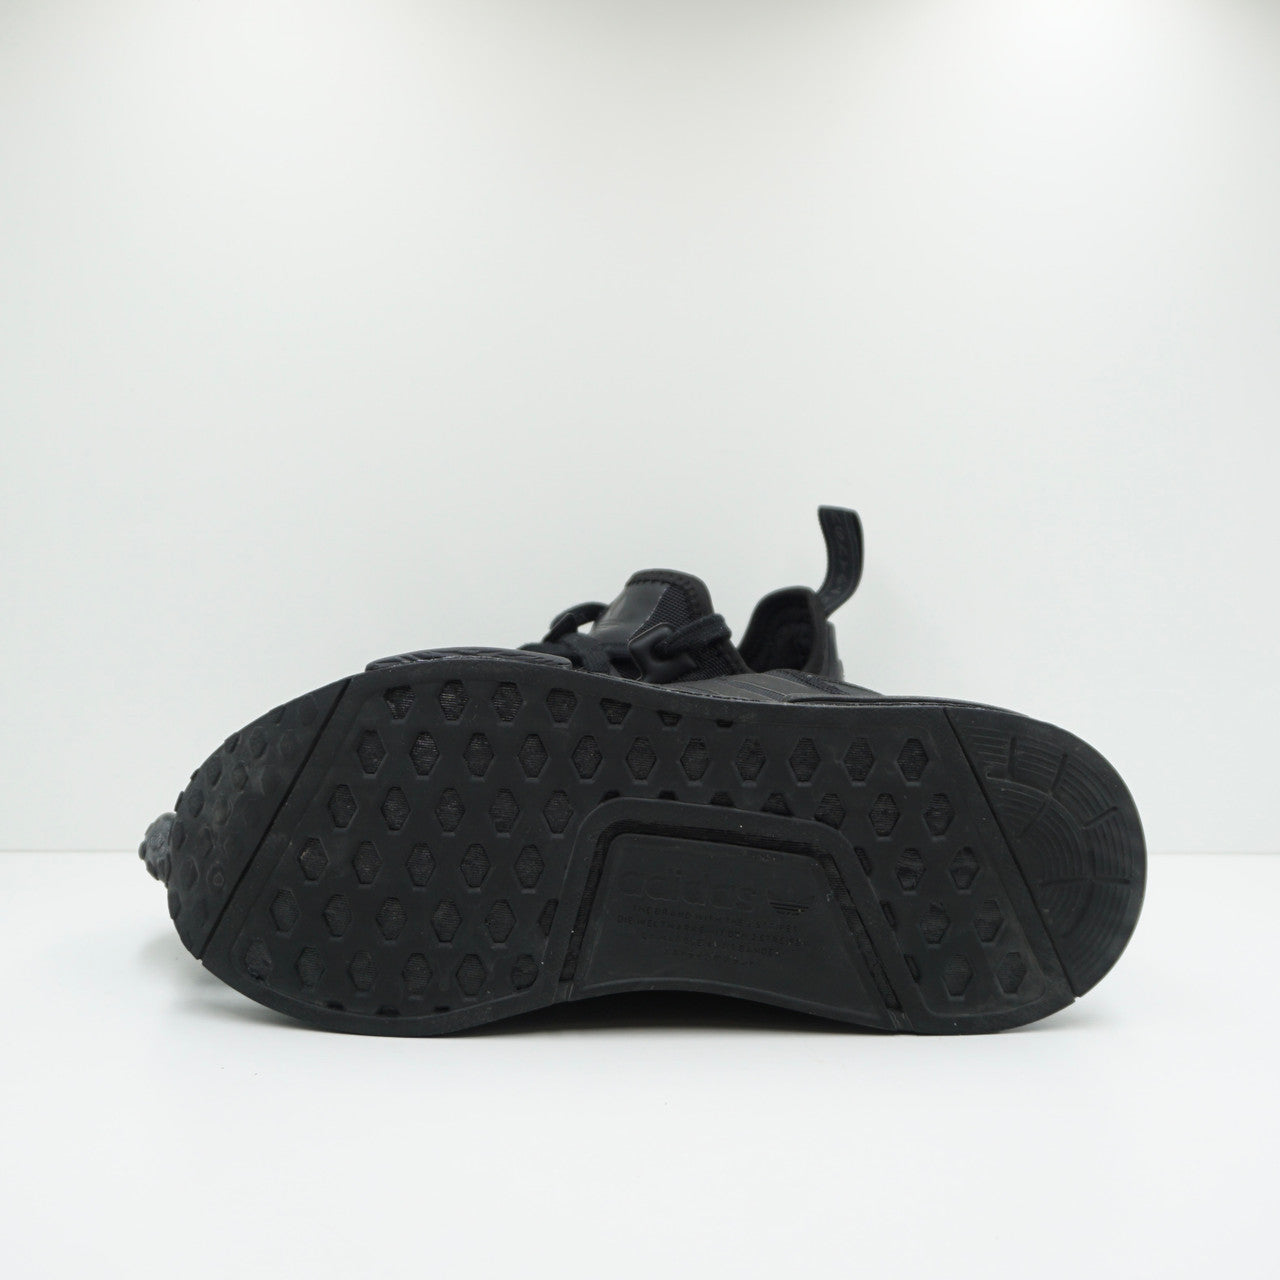 Adidas NMD R1 Triple Black (2019/2020)